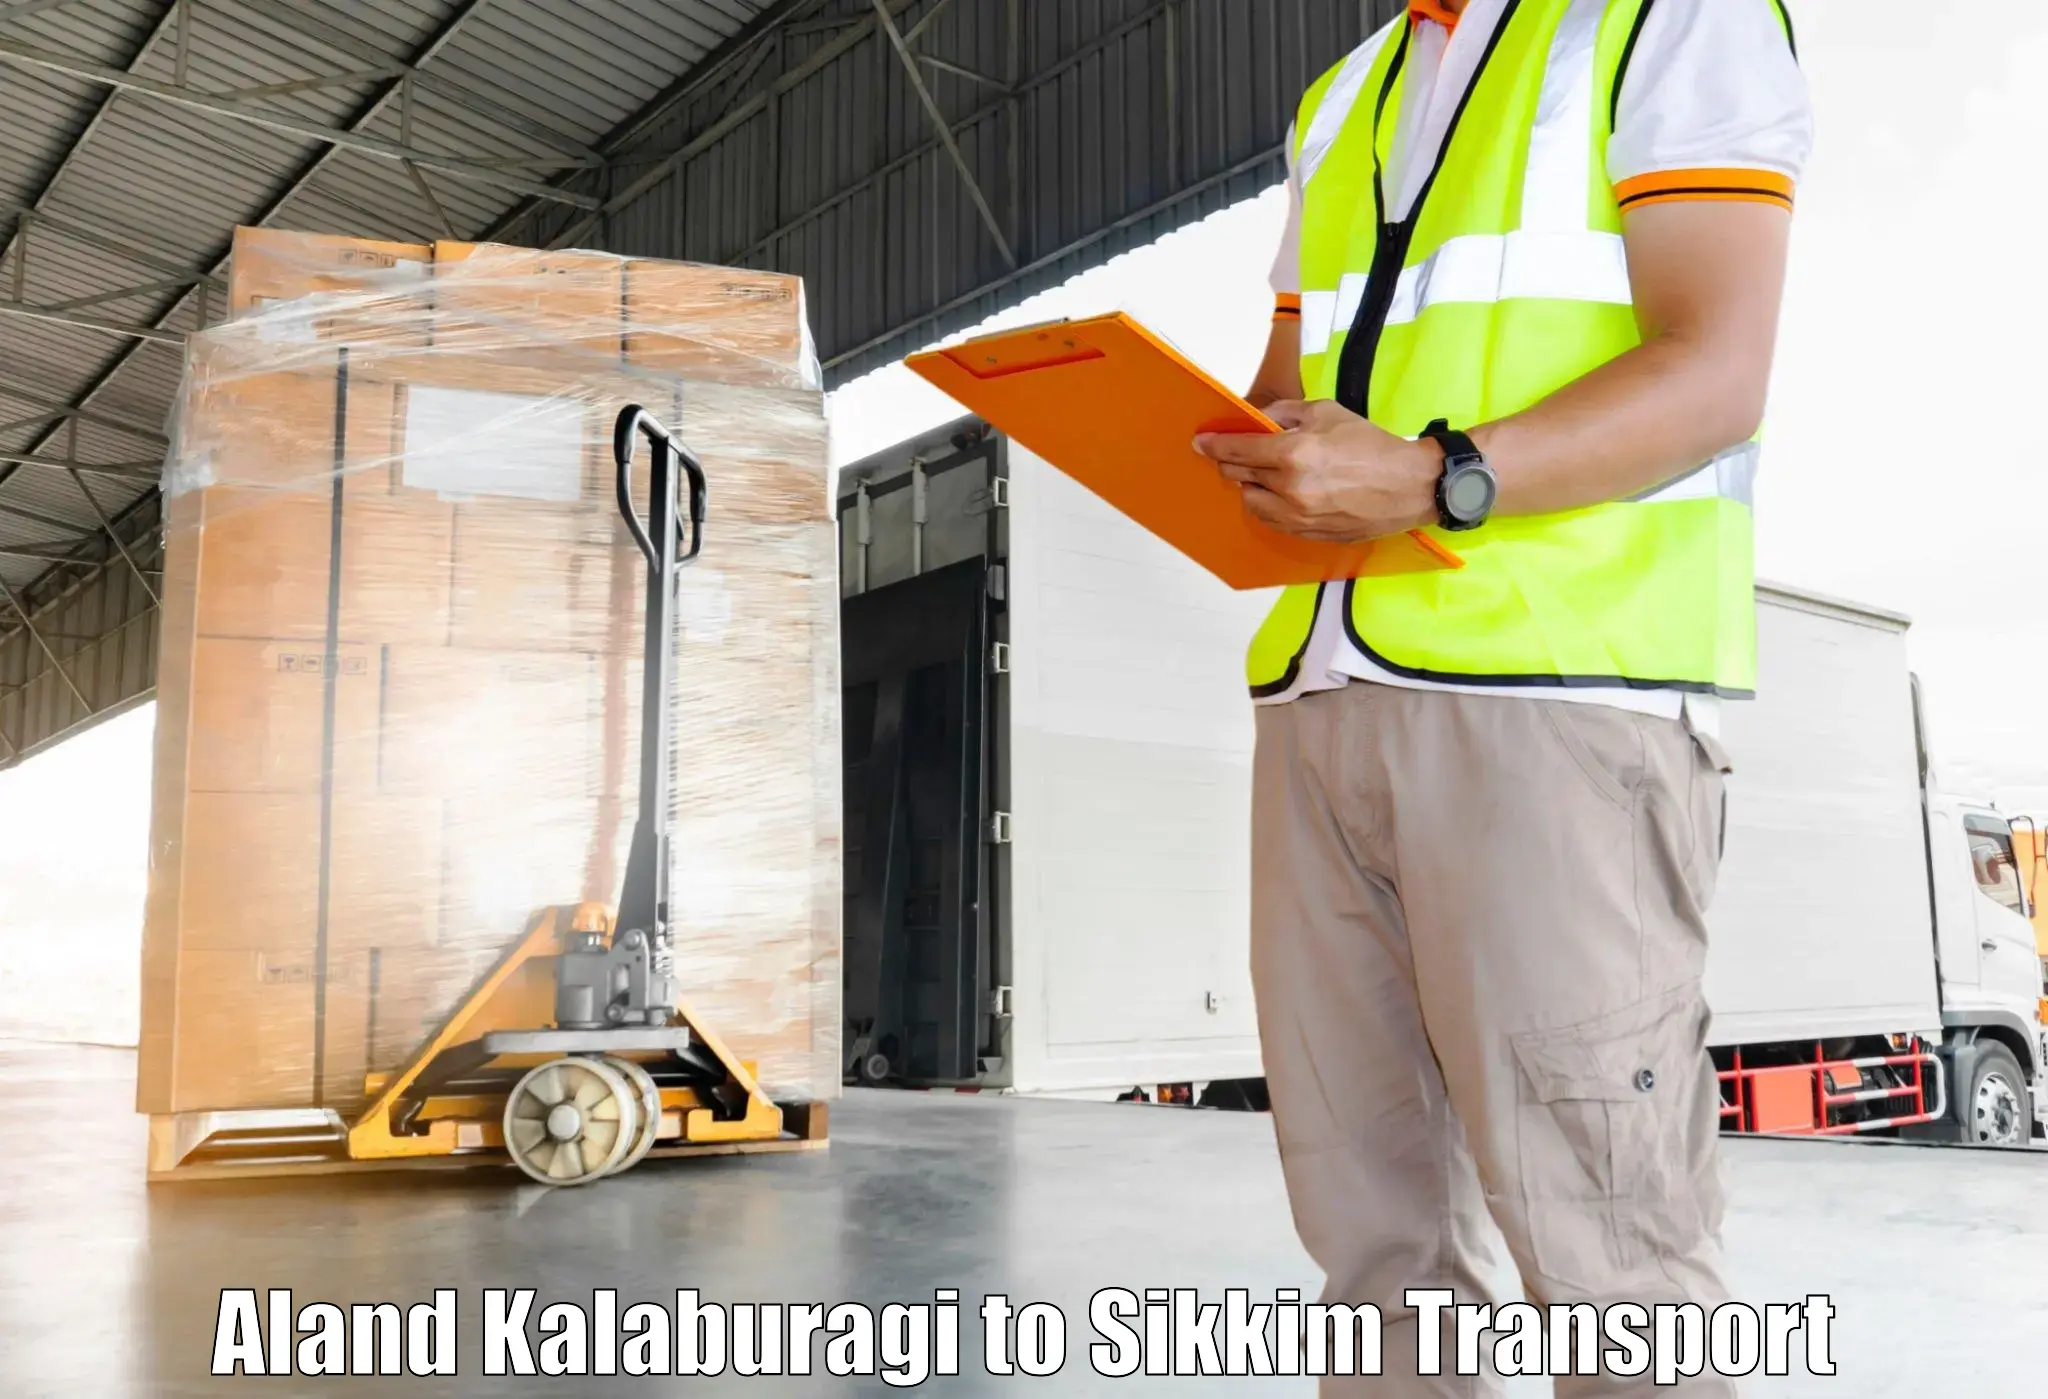 Logistics transportation services Aland Kalaburagi to Sikkim